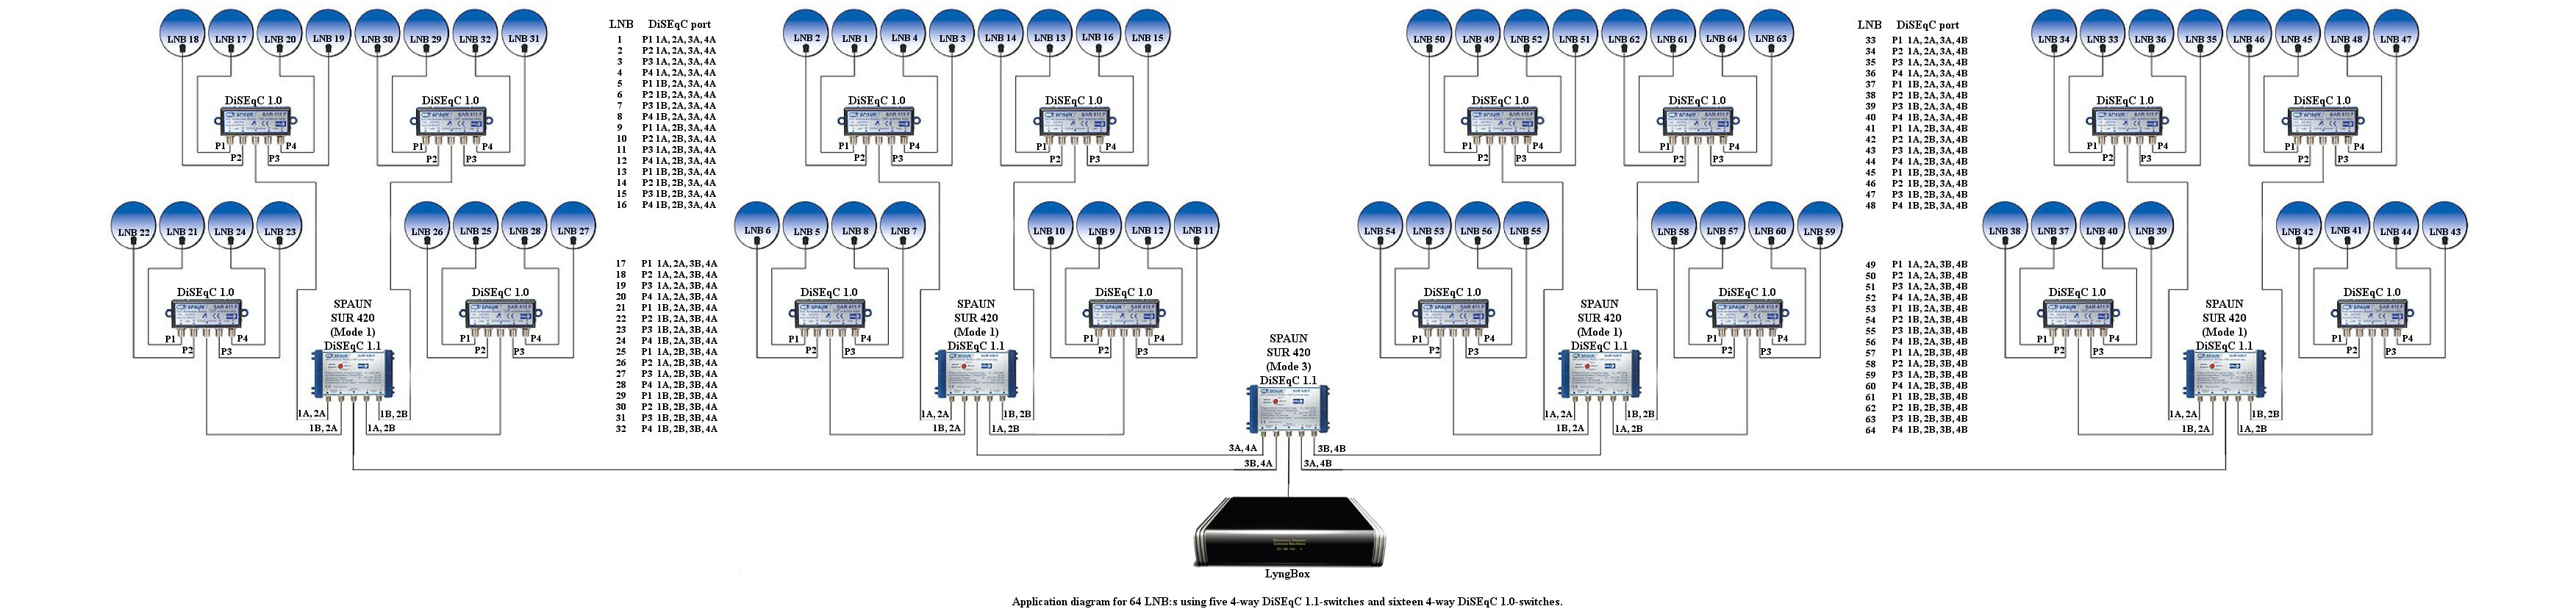 Anslutning av 64 LNB till LyngBox via 16 st 4-vägs DiSEqC 1.0-switchar och 5 st 4-vägs DiSEqC 1.1-switchar.